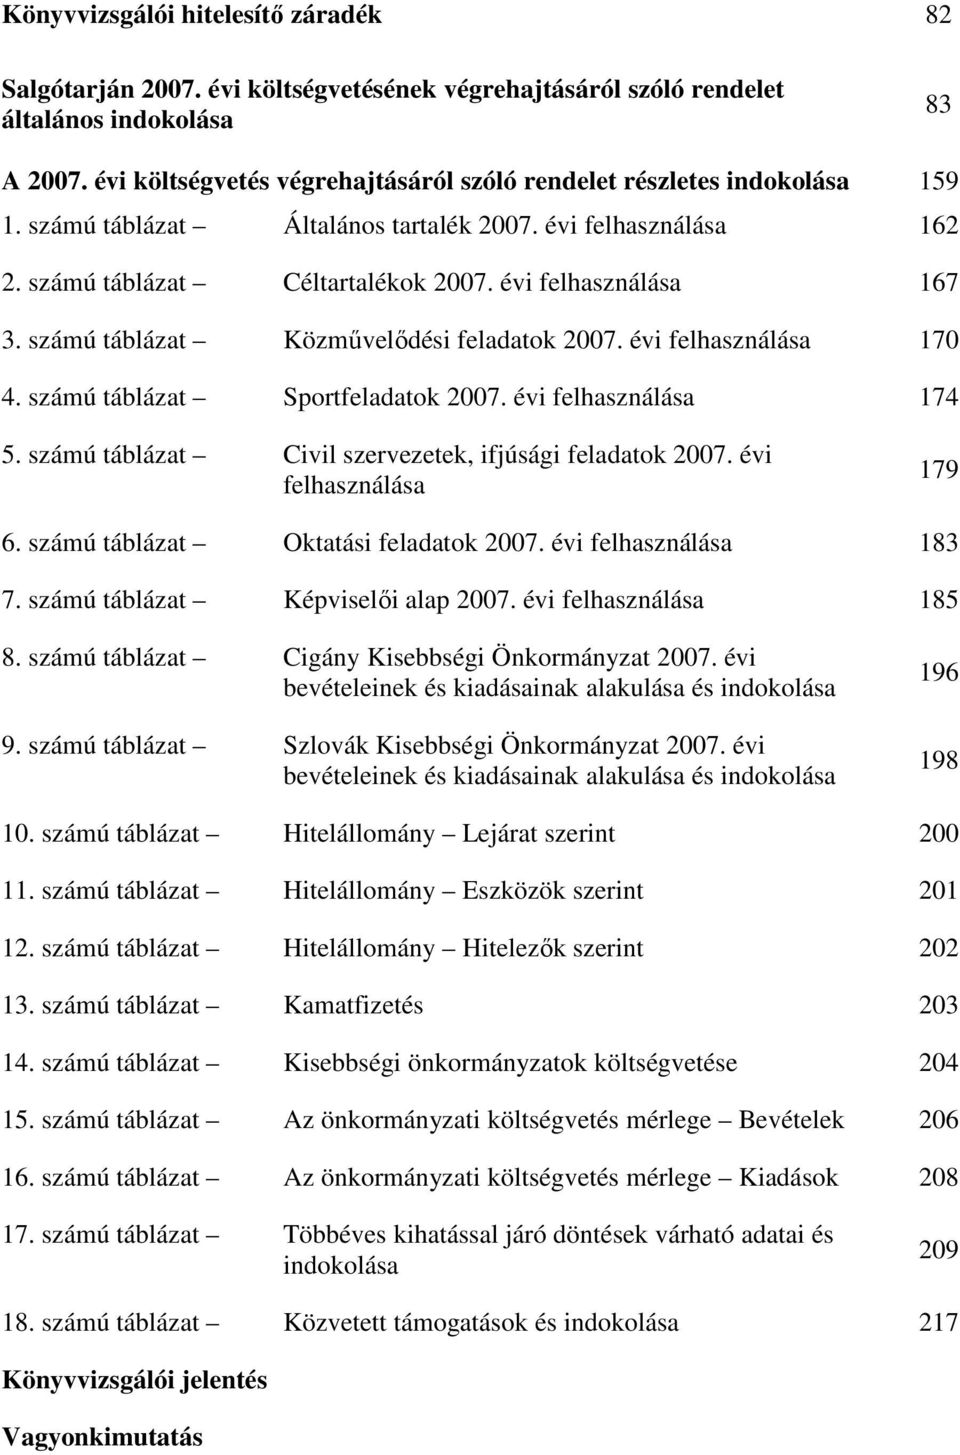 számú táblázat Közmővelıdési feladatok 2007. évi felhasználása 170 4. számú táblázat Sportfeladatok 2007. évi felhasználása 174 5. számú táblázat Civil szervezetek, ifjúsági feladatok 2007.